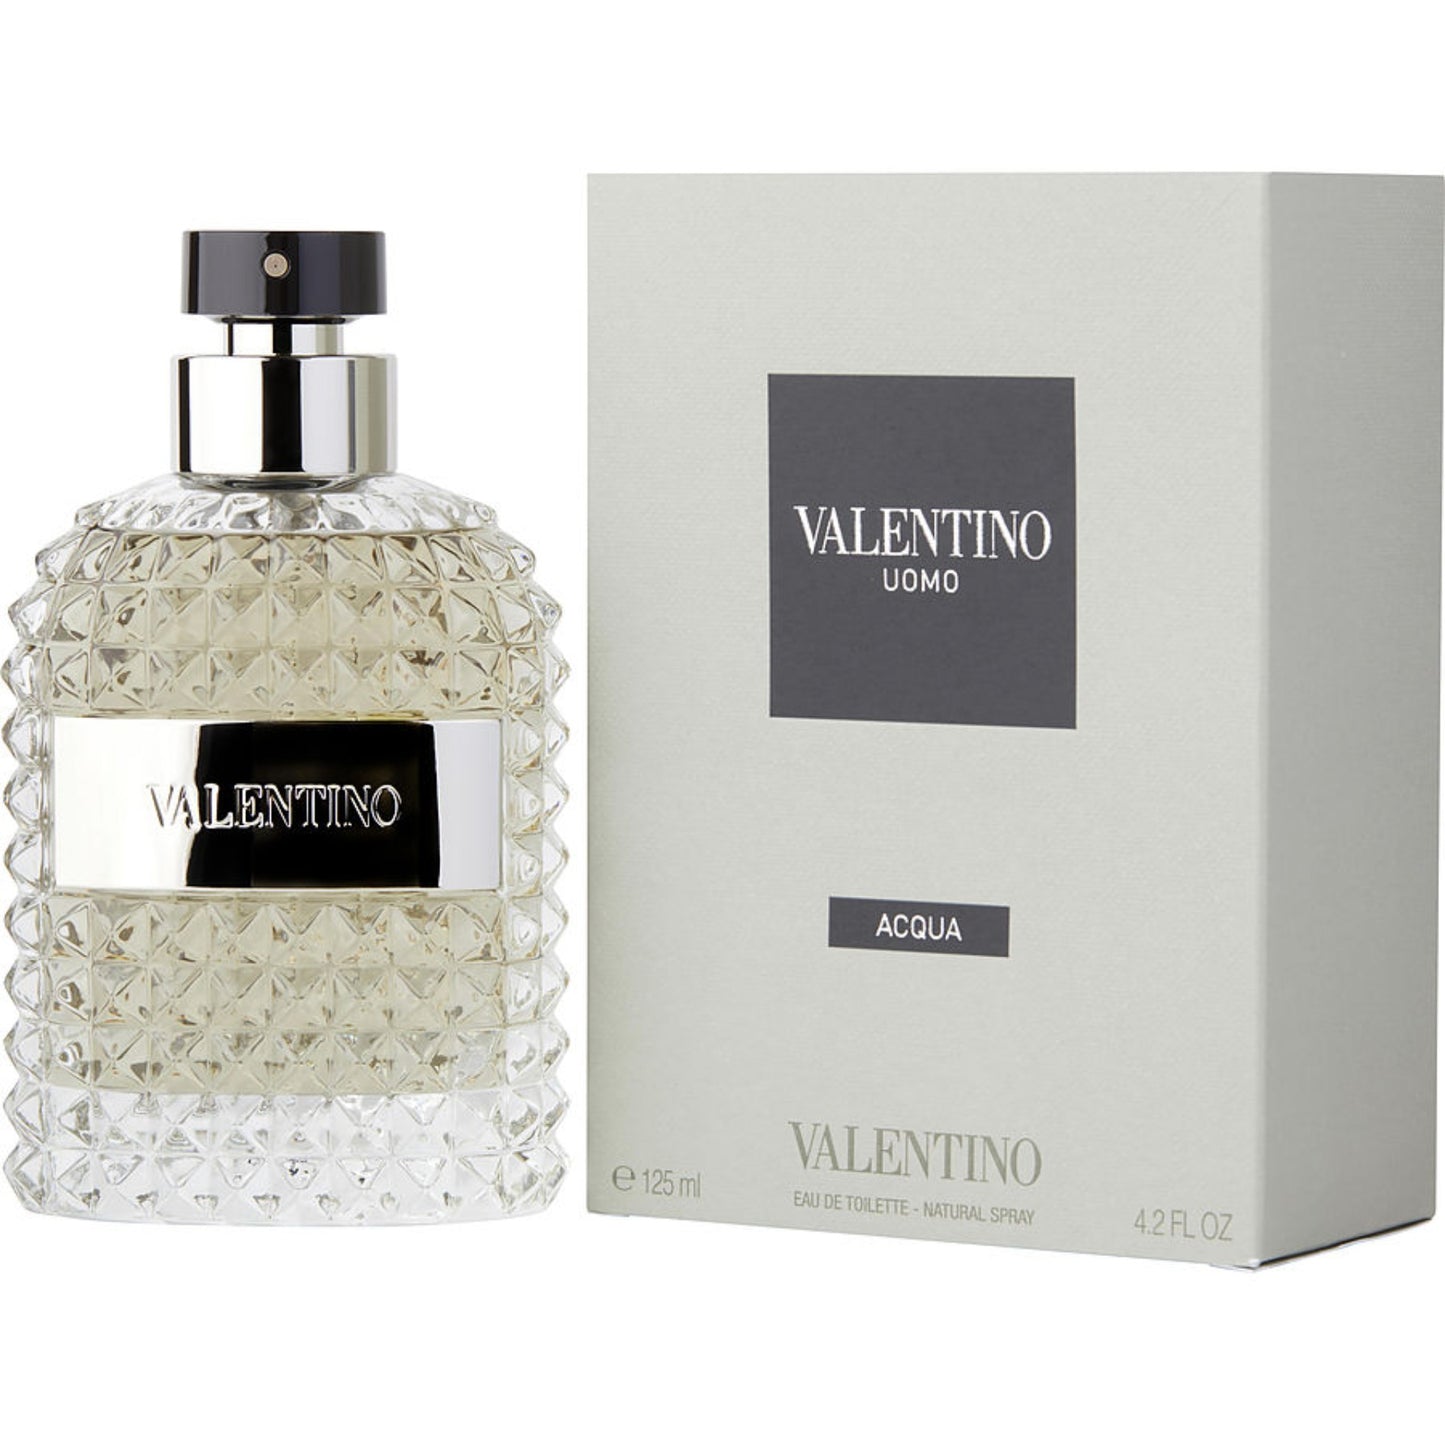 Valentino Uomo Acqua by Valentino (4.2 oz)